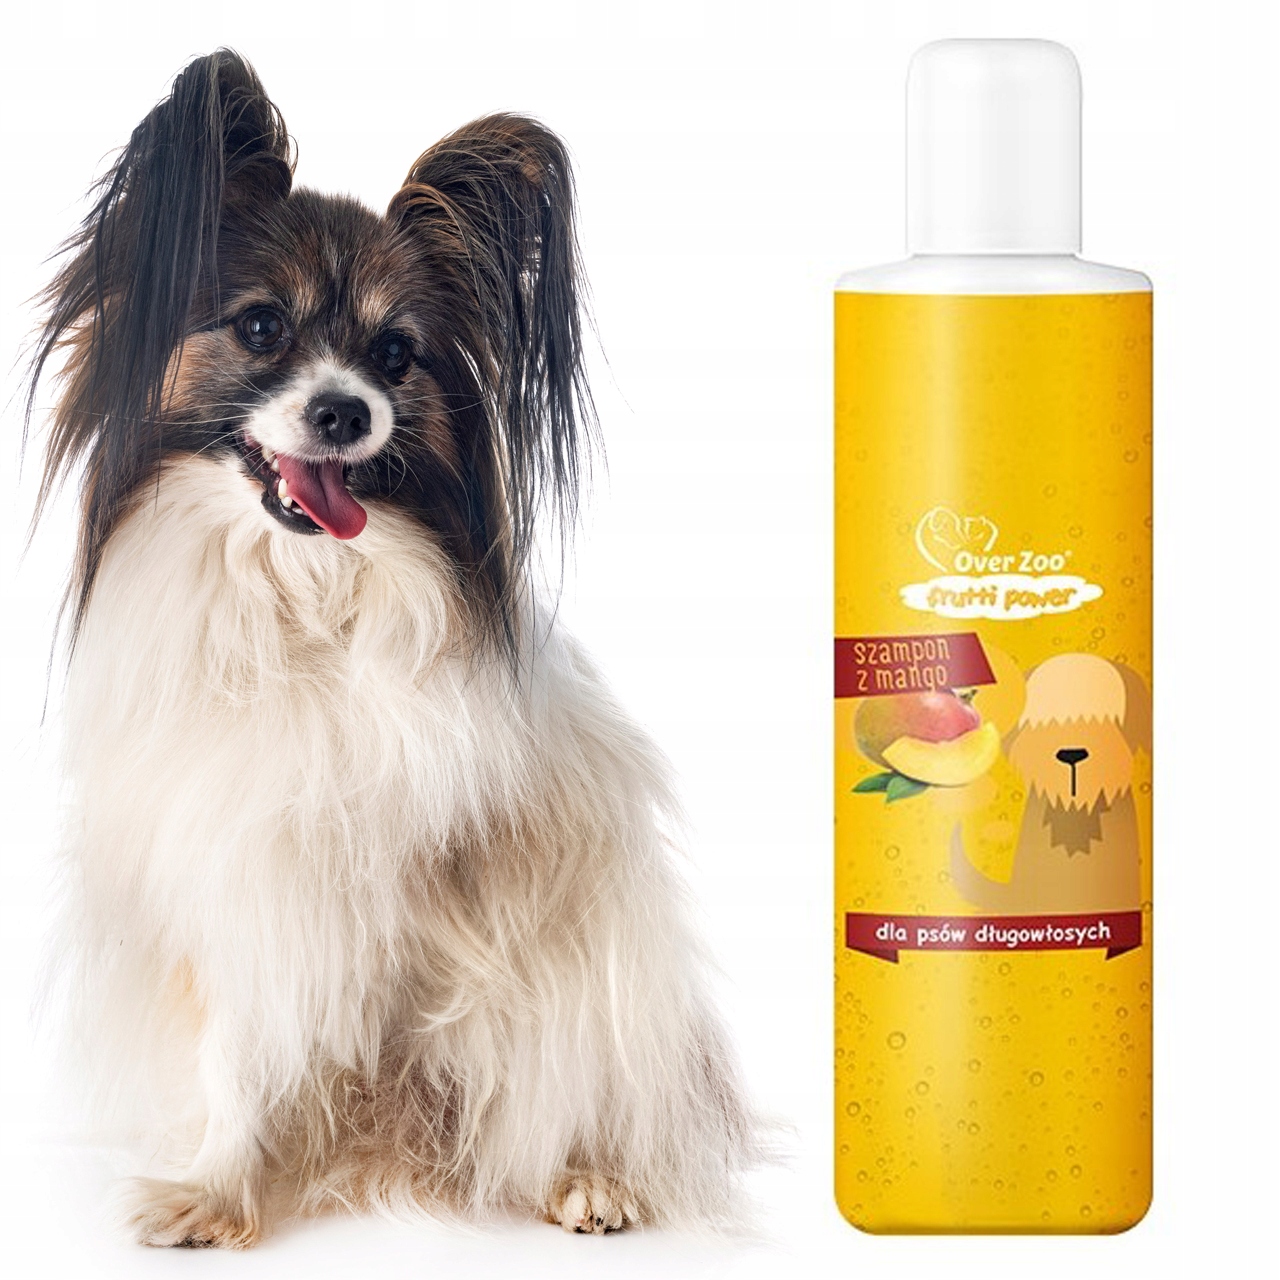 szampon over dla psów długowłosych